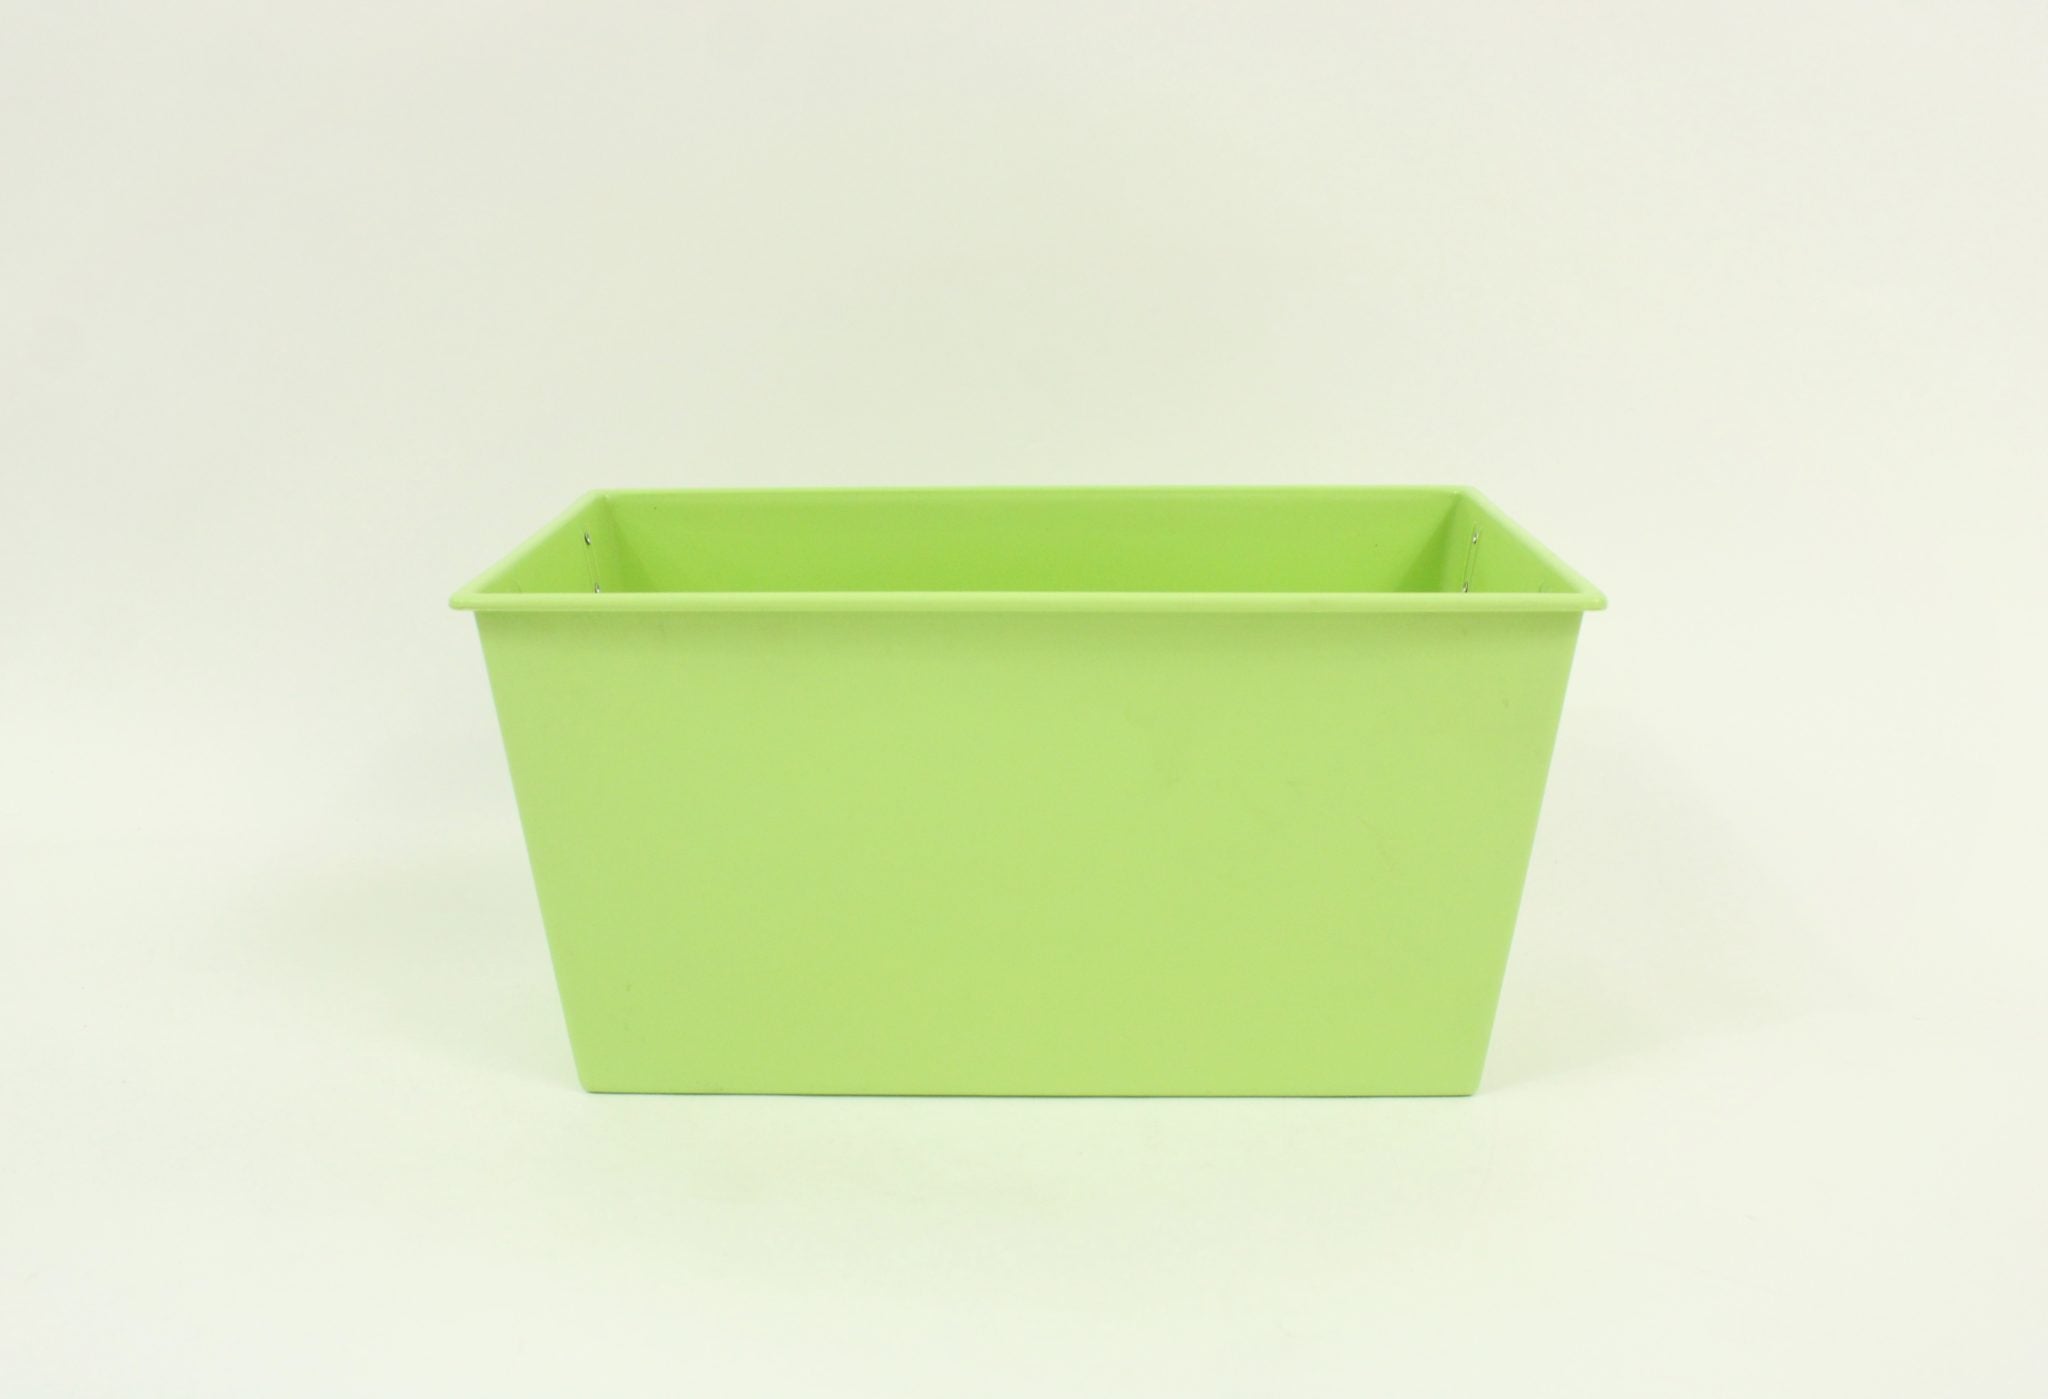 Green Plastic Storage Bin | 13"x 8"x 8"